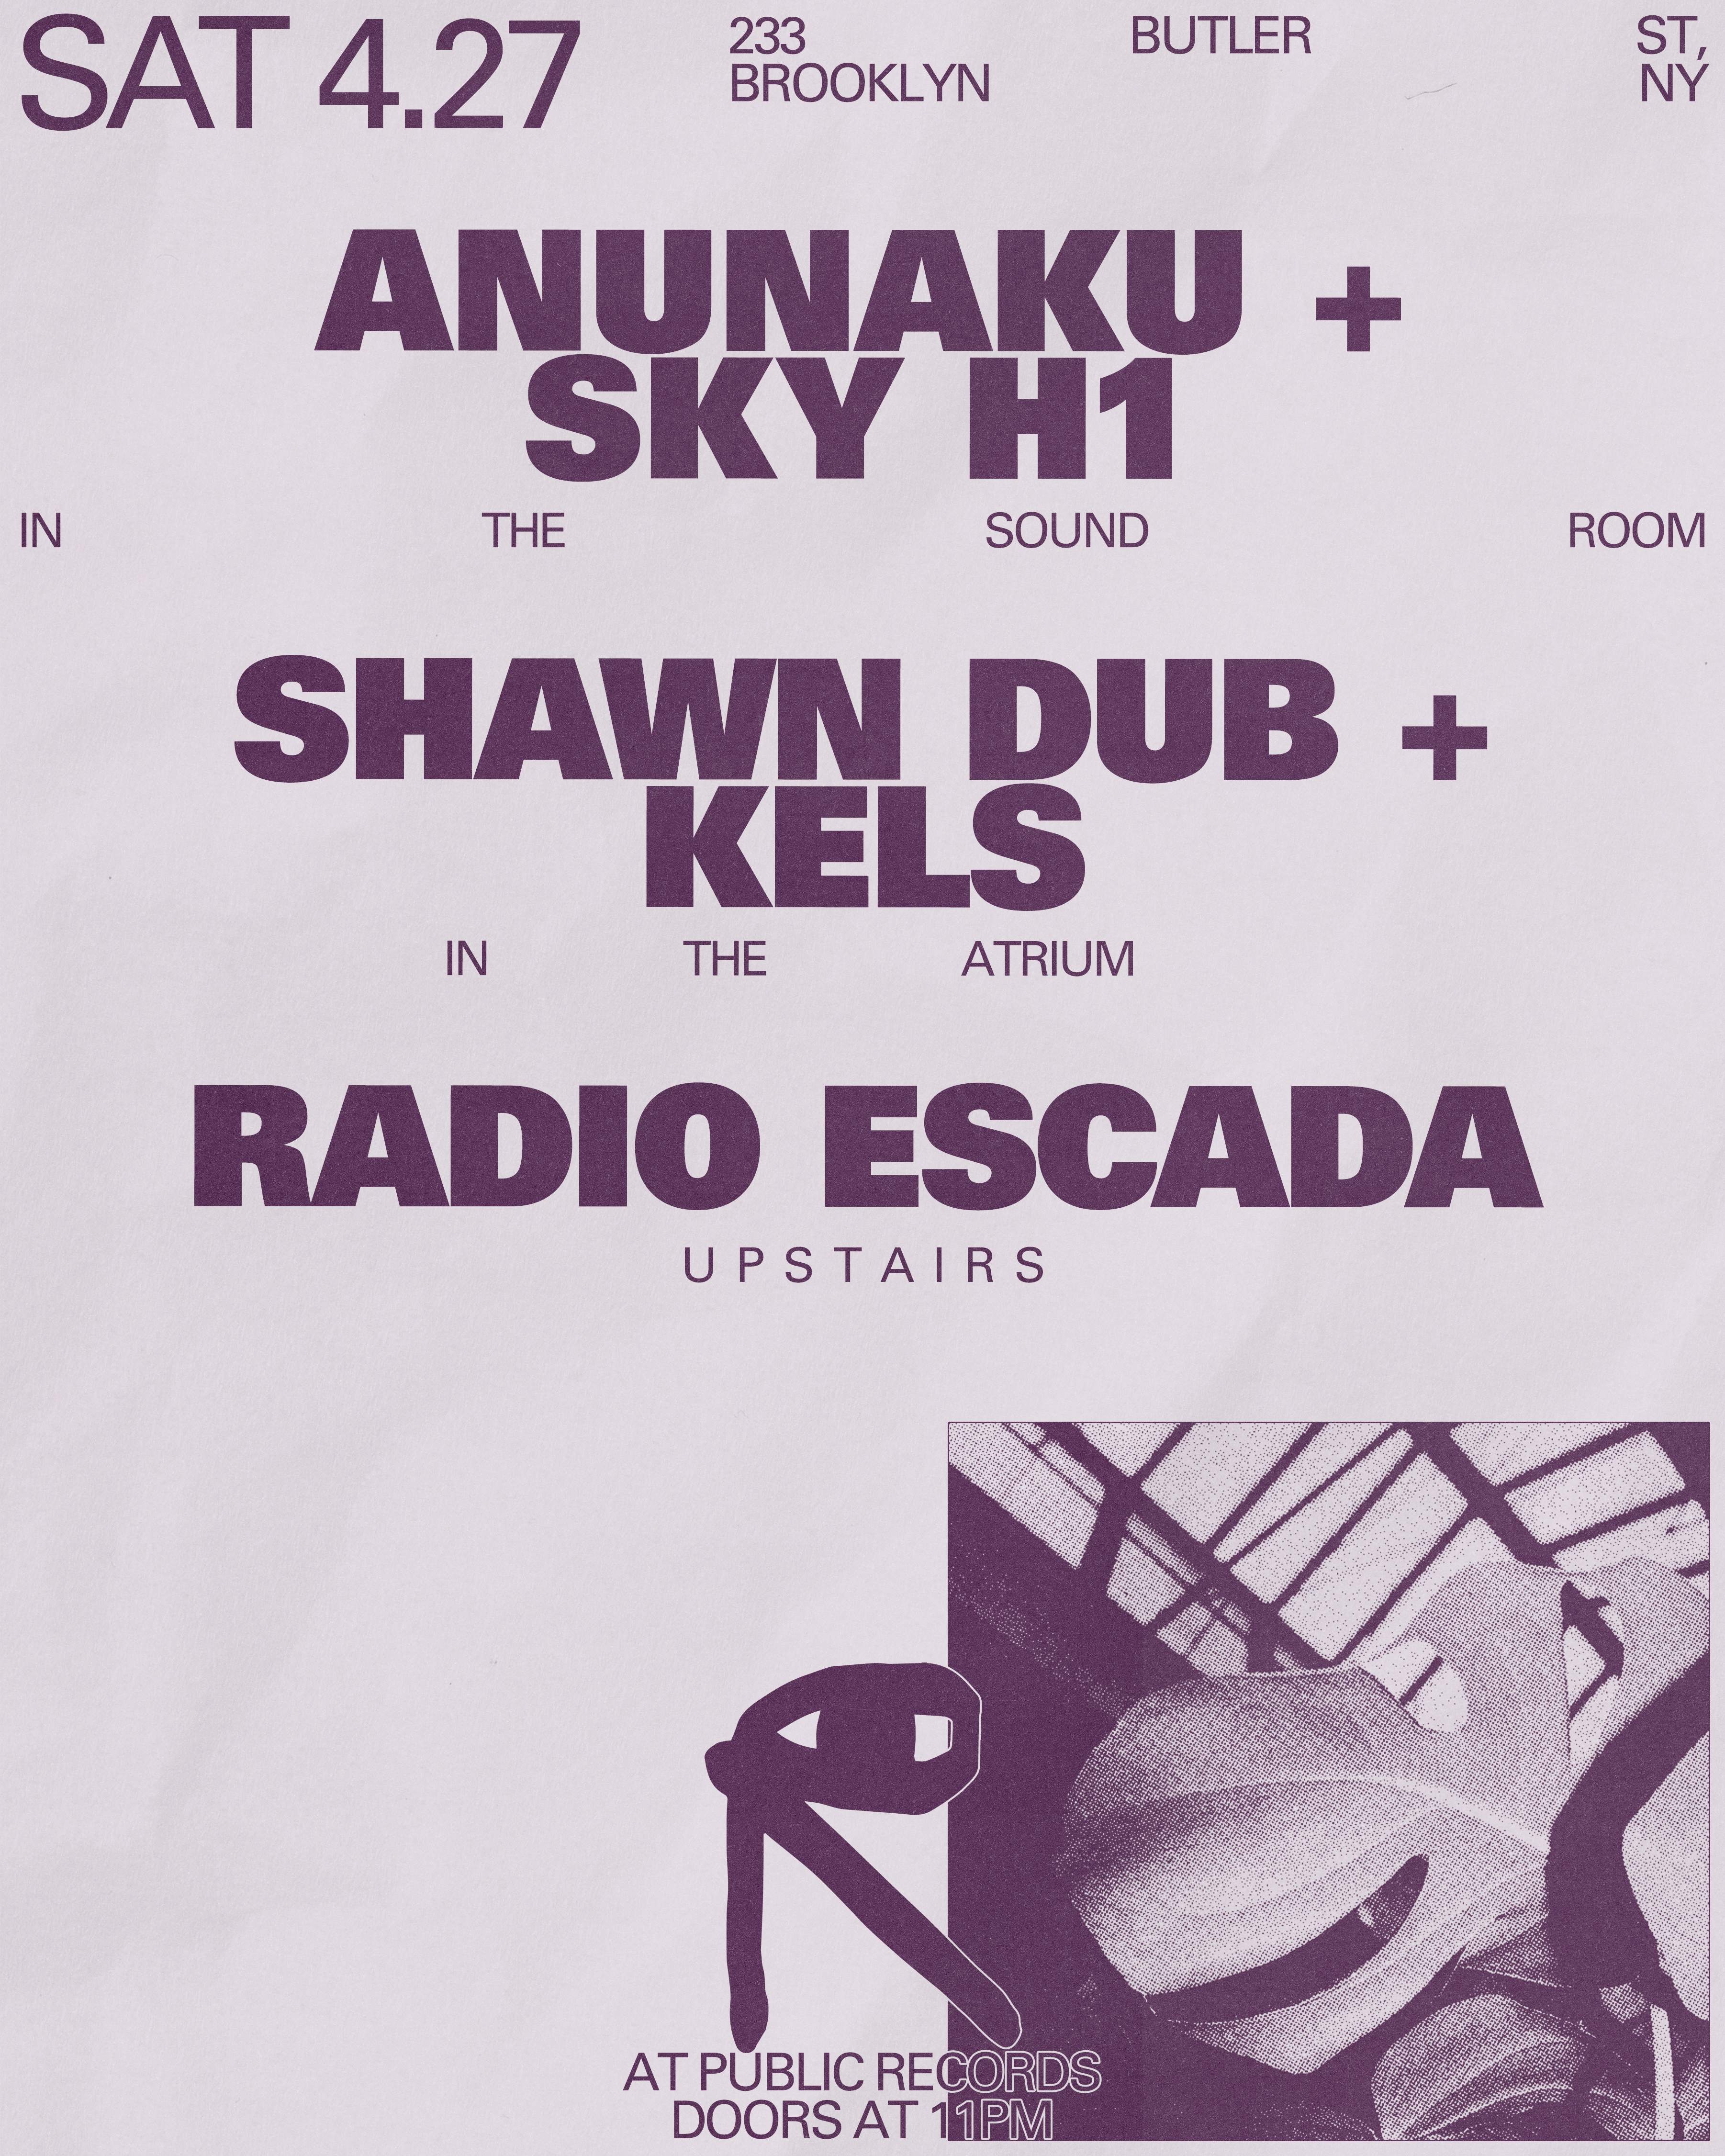 Anunaku + SKY H1 / Shawn Dub + Kels / Radio Escada - Página frontal